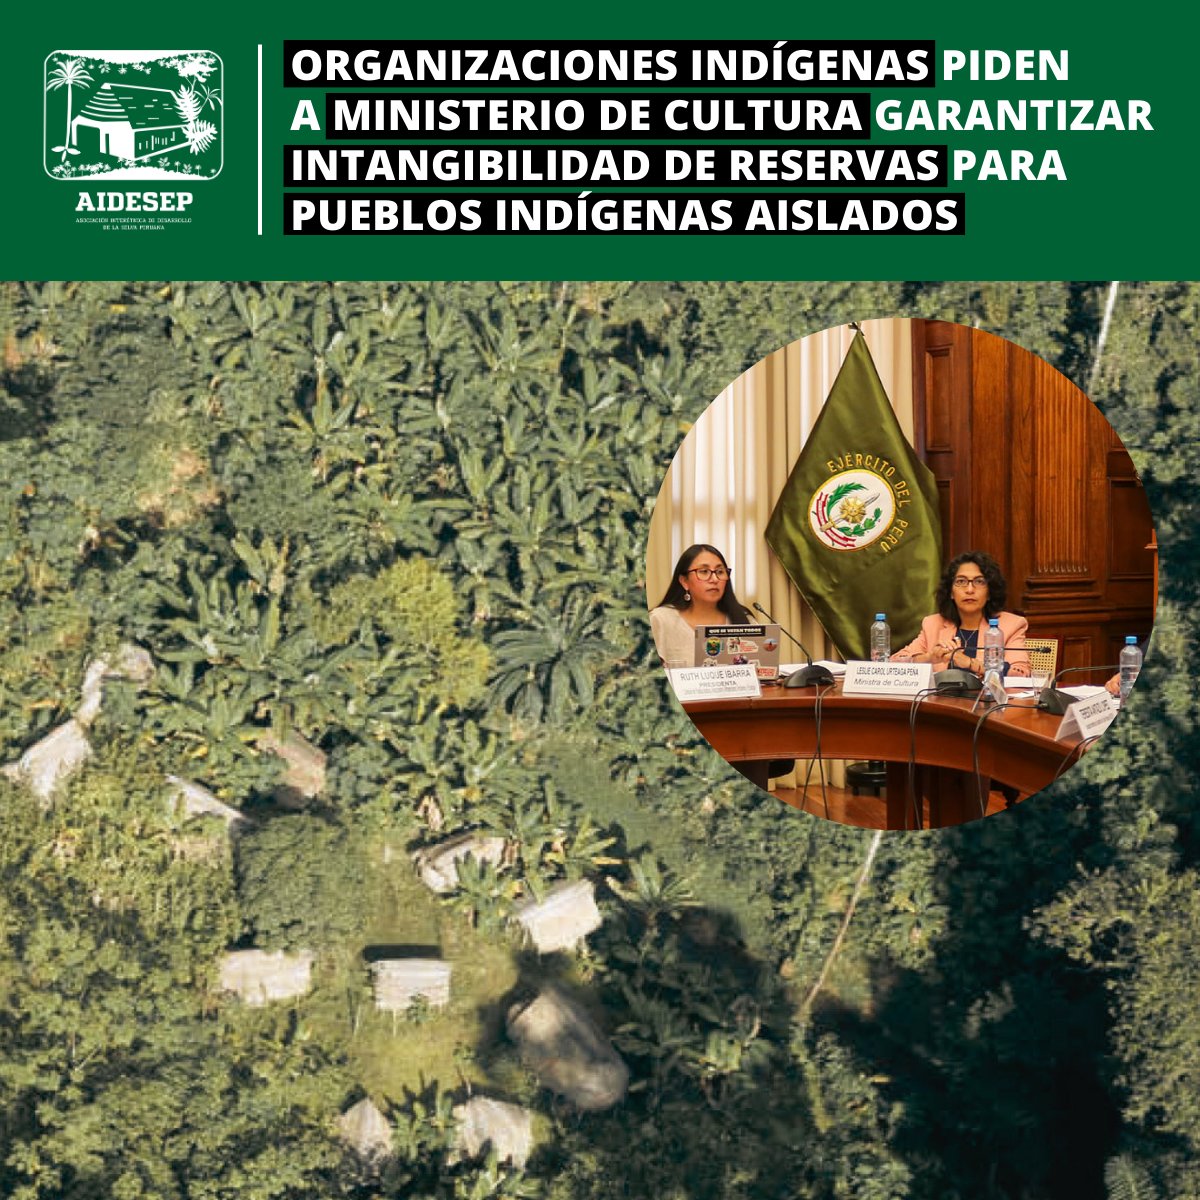 Ante las declaraciones de la titular del @MinCulturaPe, en la sesión de la @cdpueblos el pasado 30/04, AIDESEP y nuestras bases exigimos respetar intangibilidad de reservas indígenas para la protección de los Pueblos Indígenas en Aislamiento y Contacto Inicial (PIACI).